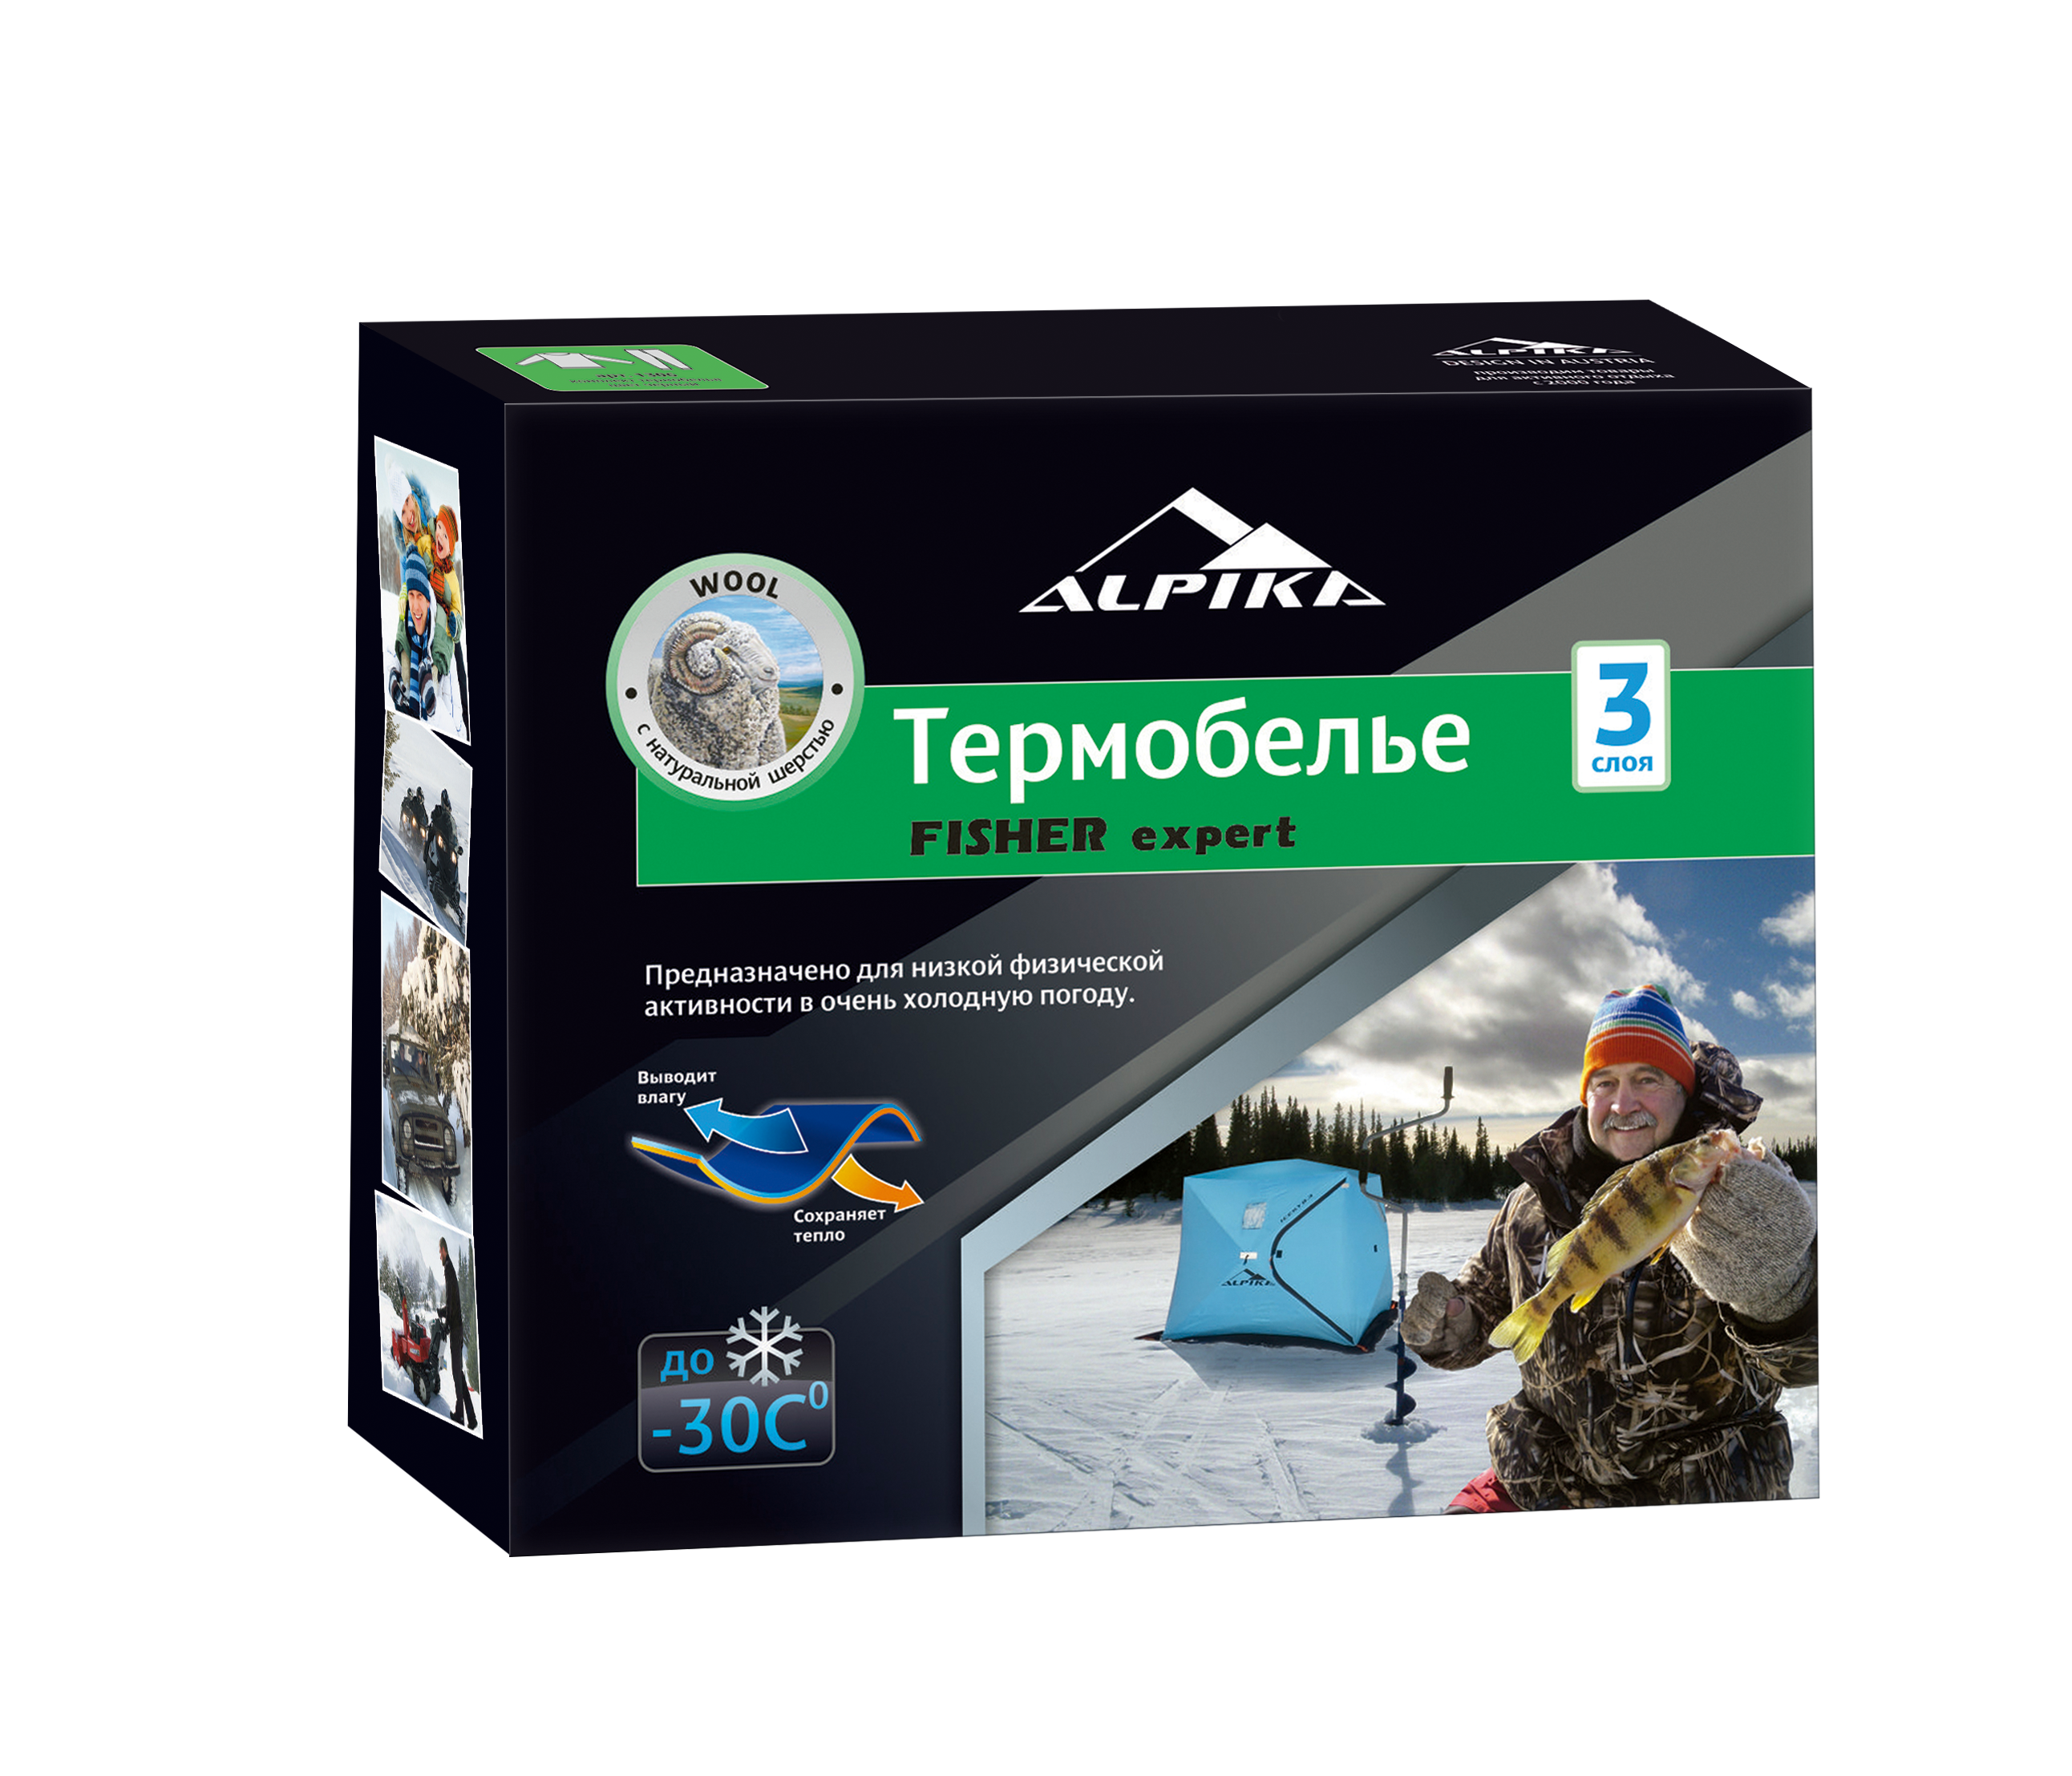 Термобелье (комплект) ALPIKA Термобелье FISHER Expert (-30) 260 гр цвет  черный.